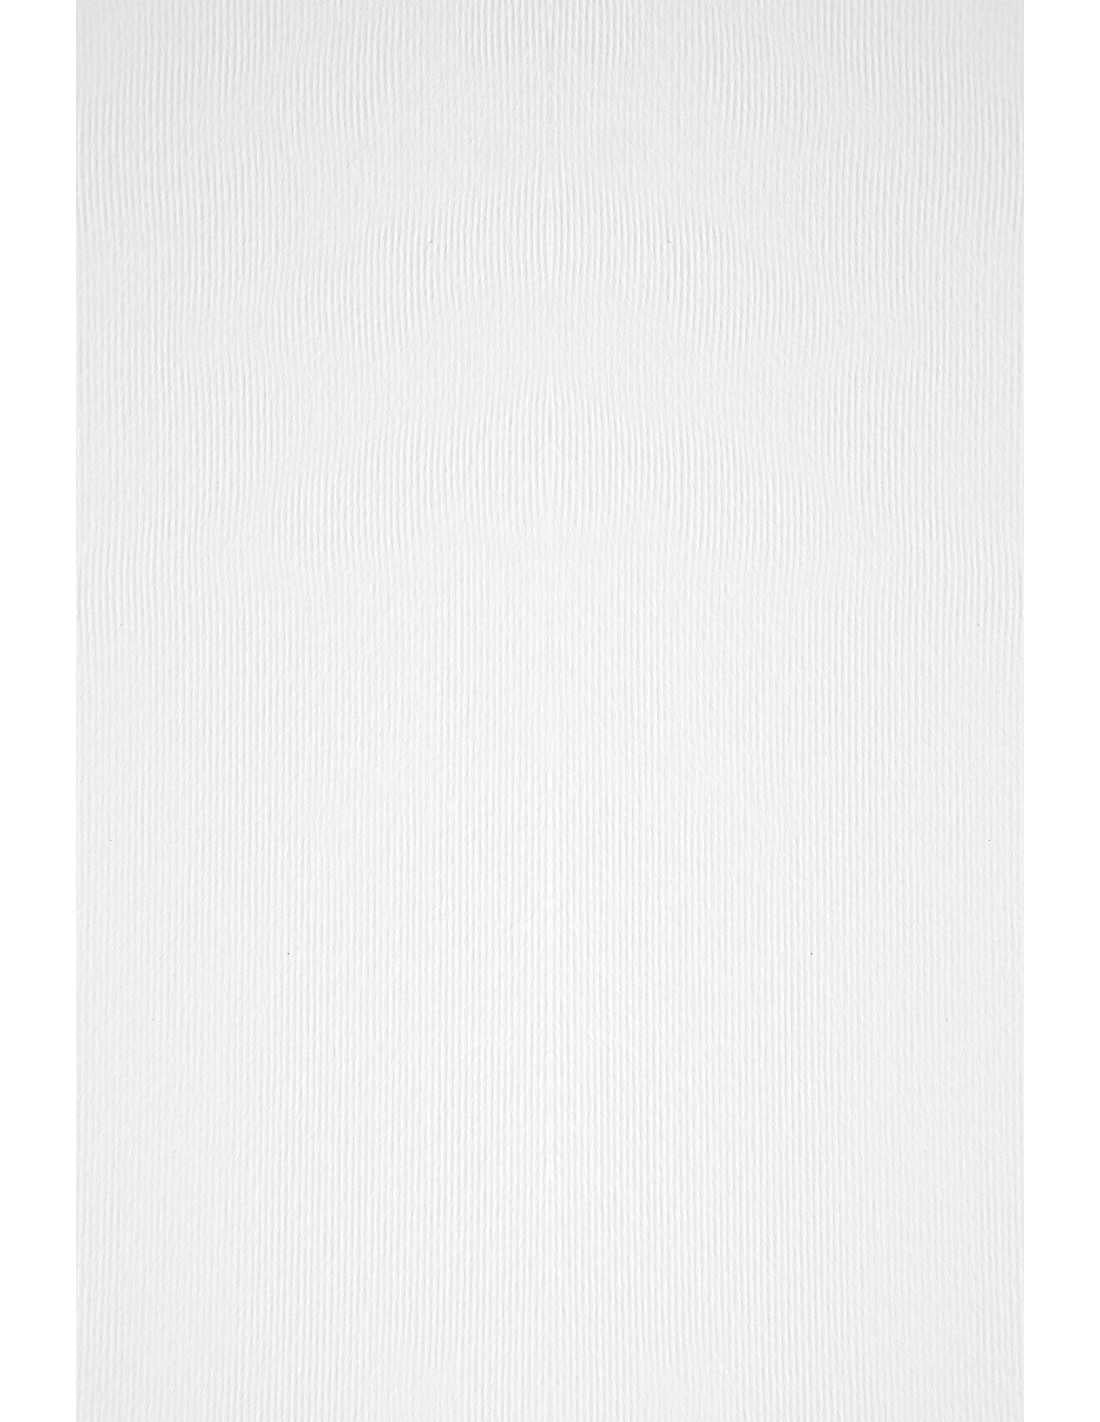 Fehér olasz művészpapír - 300 g/m2 - A4 - Acquerello